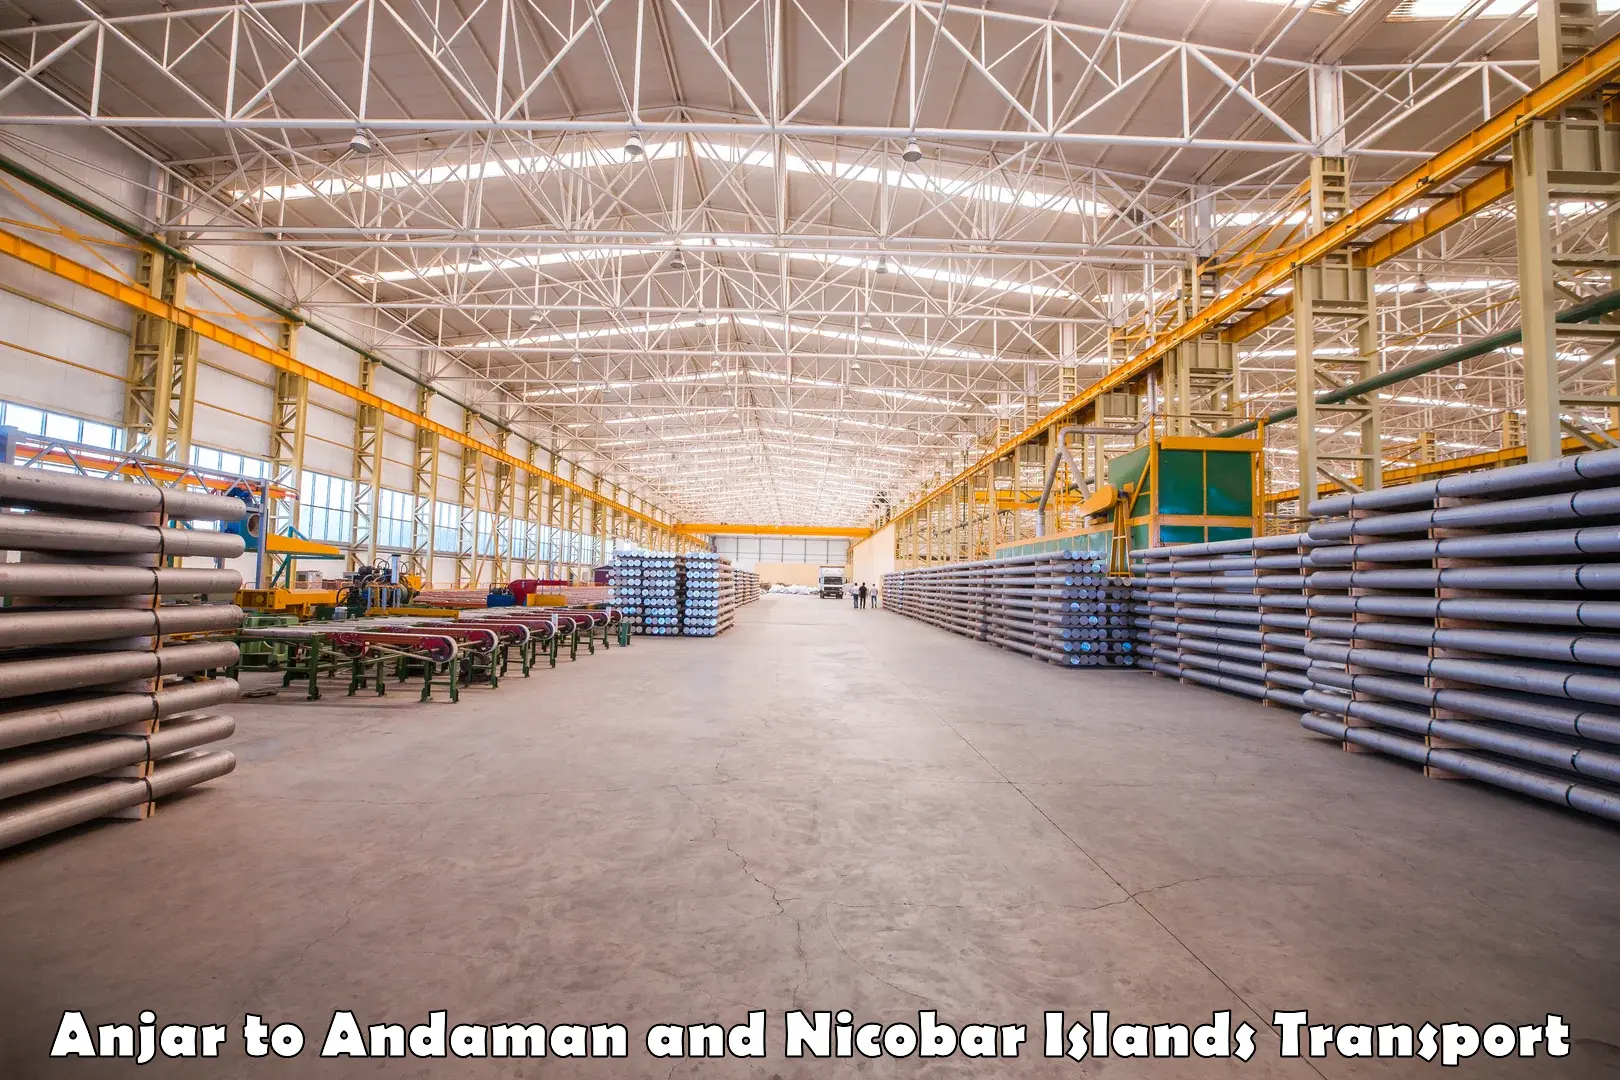 Furniture transport service Anjar to Andaman and Nicobar Islands